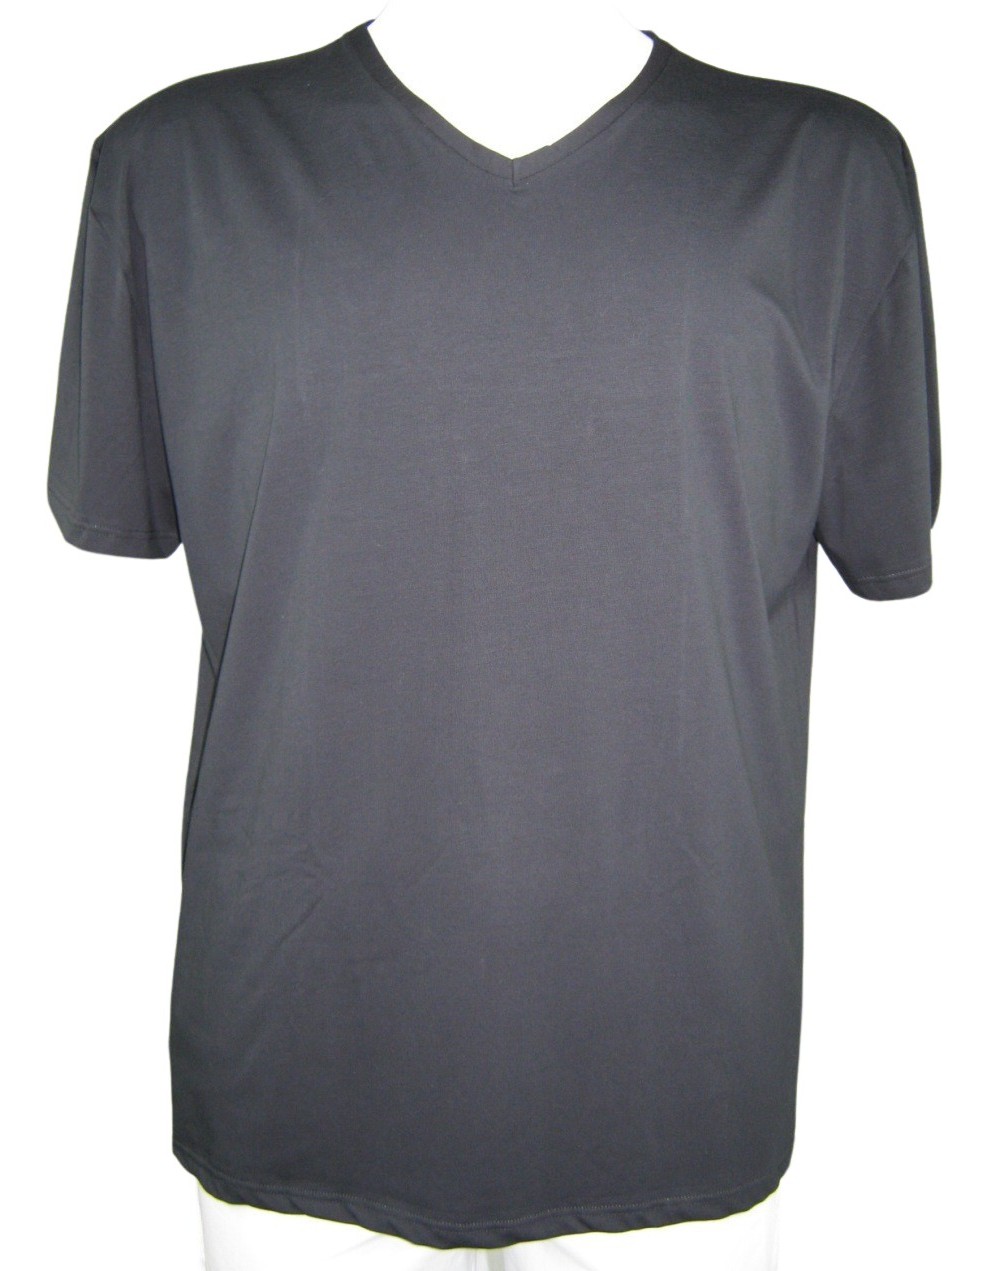 GARDA 3 t-Shirt Uomo Mezza Manica Scollo a V Cotone Elastico Ginni Art 2051 